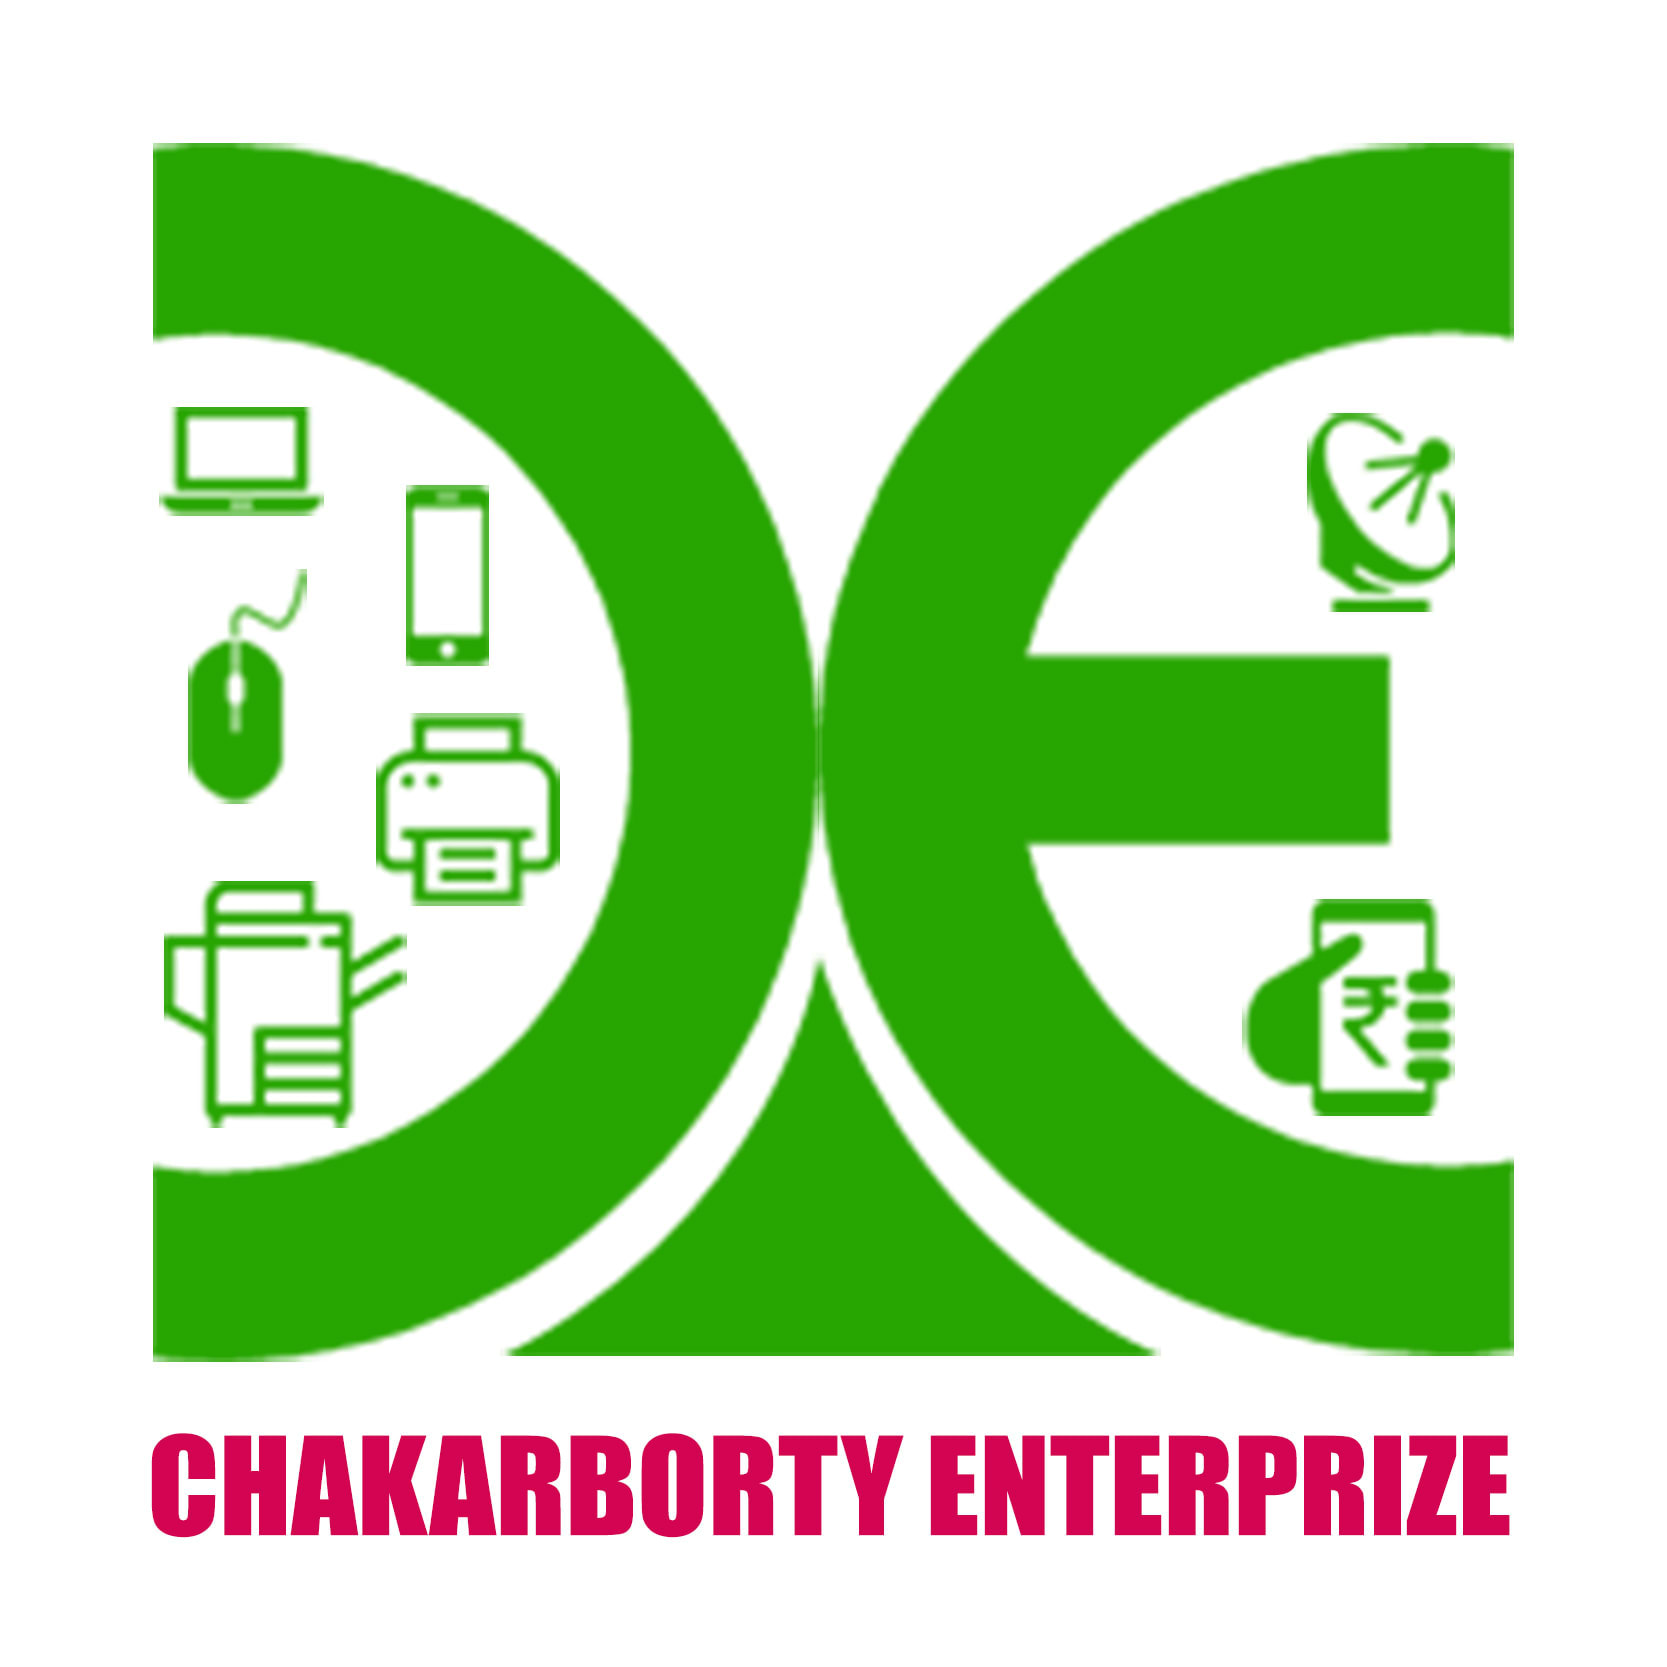 Chakraborty Enterprise